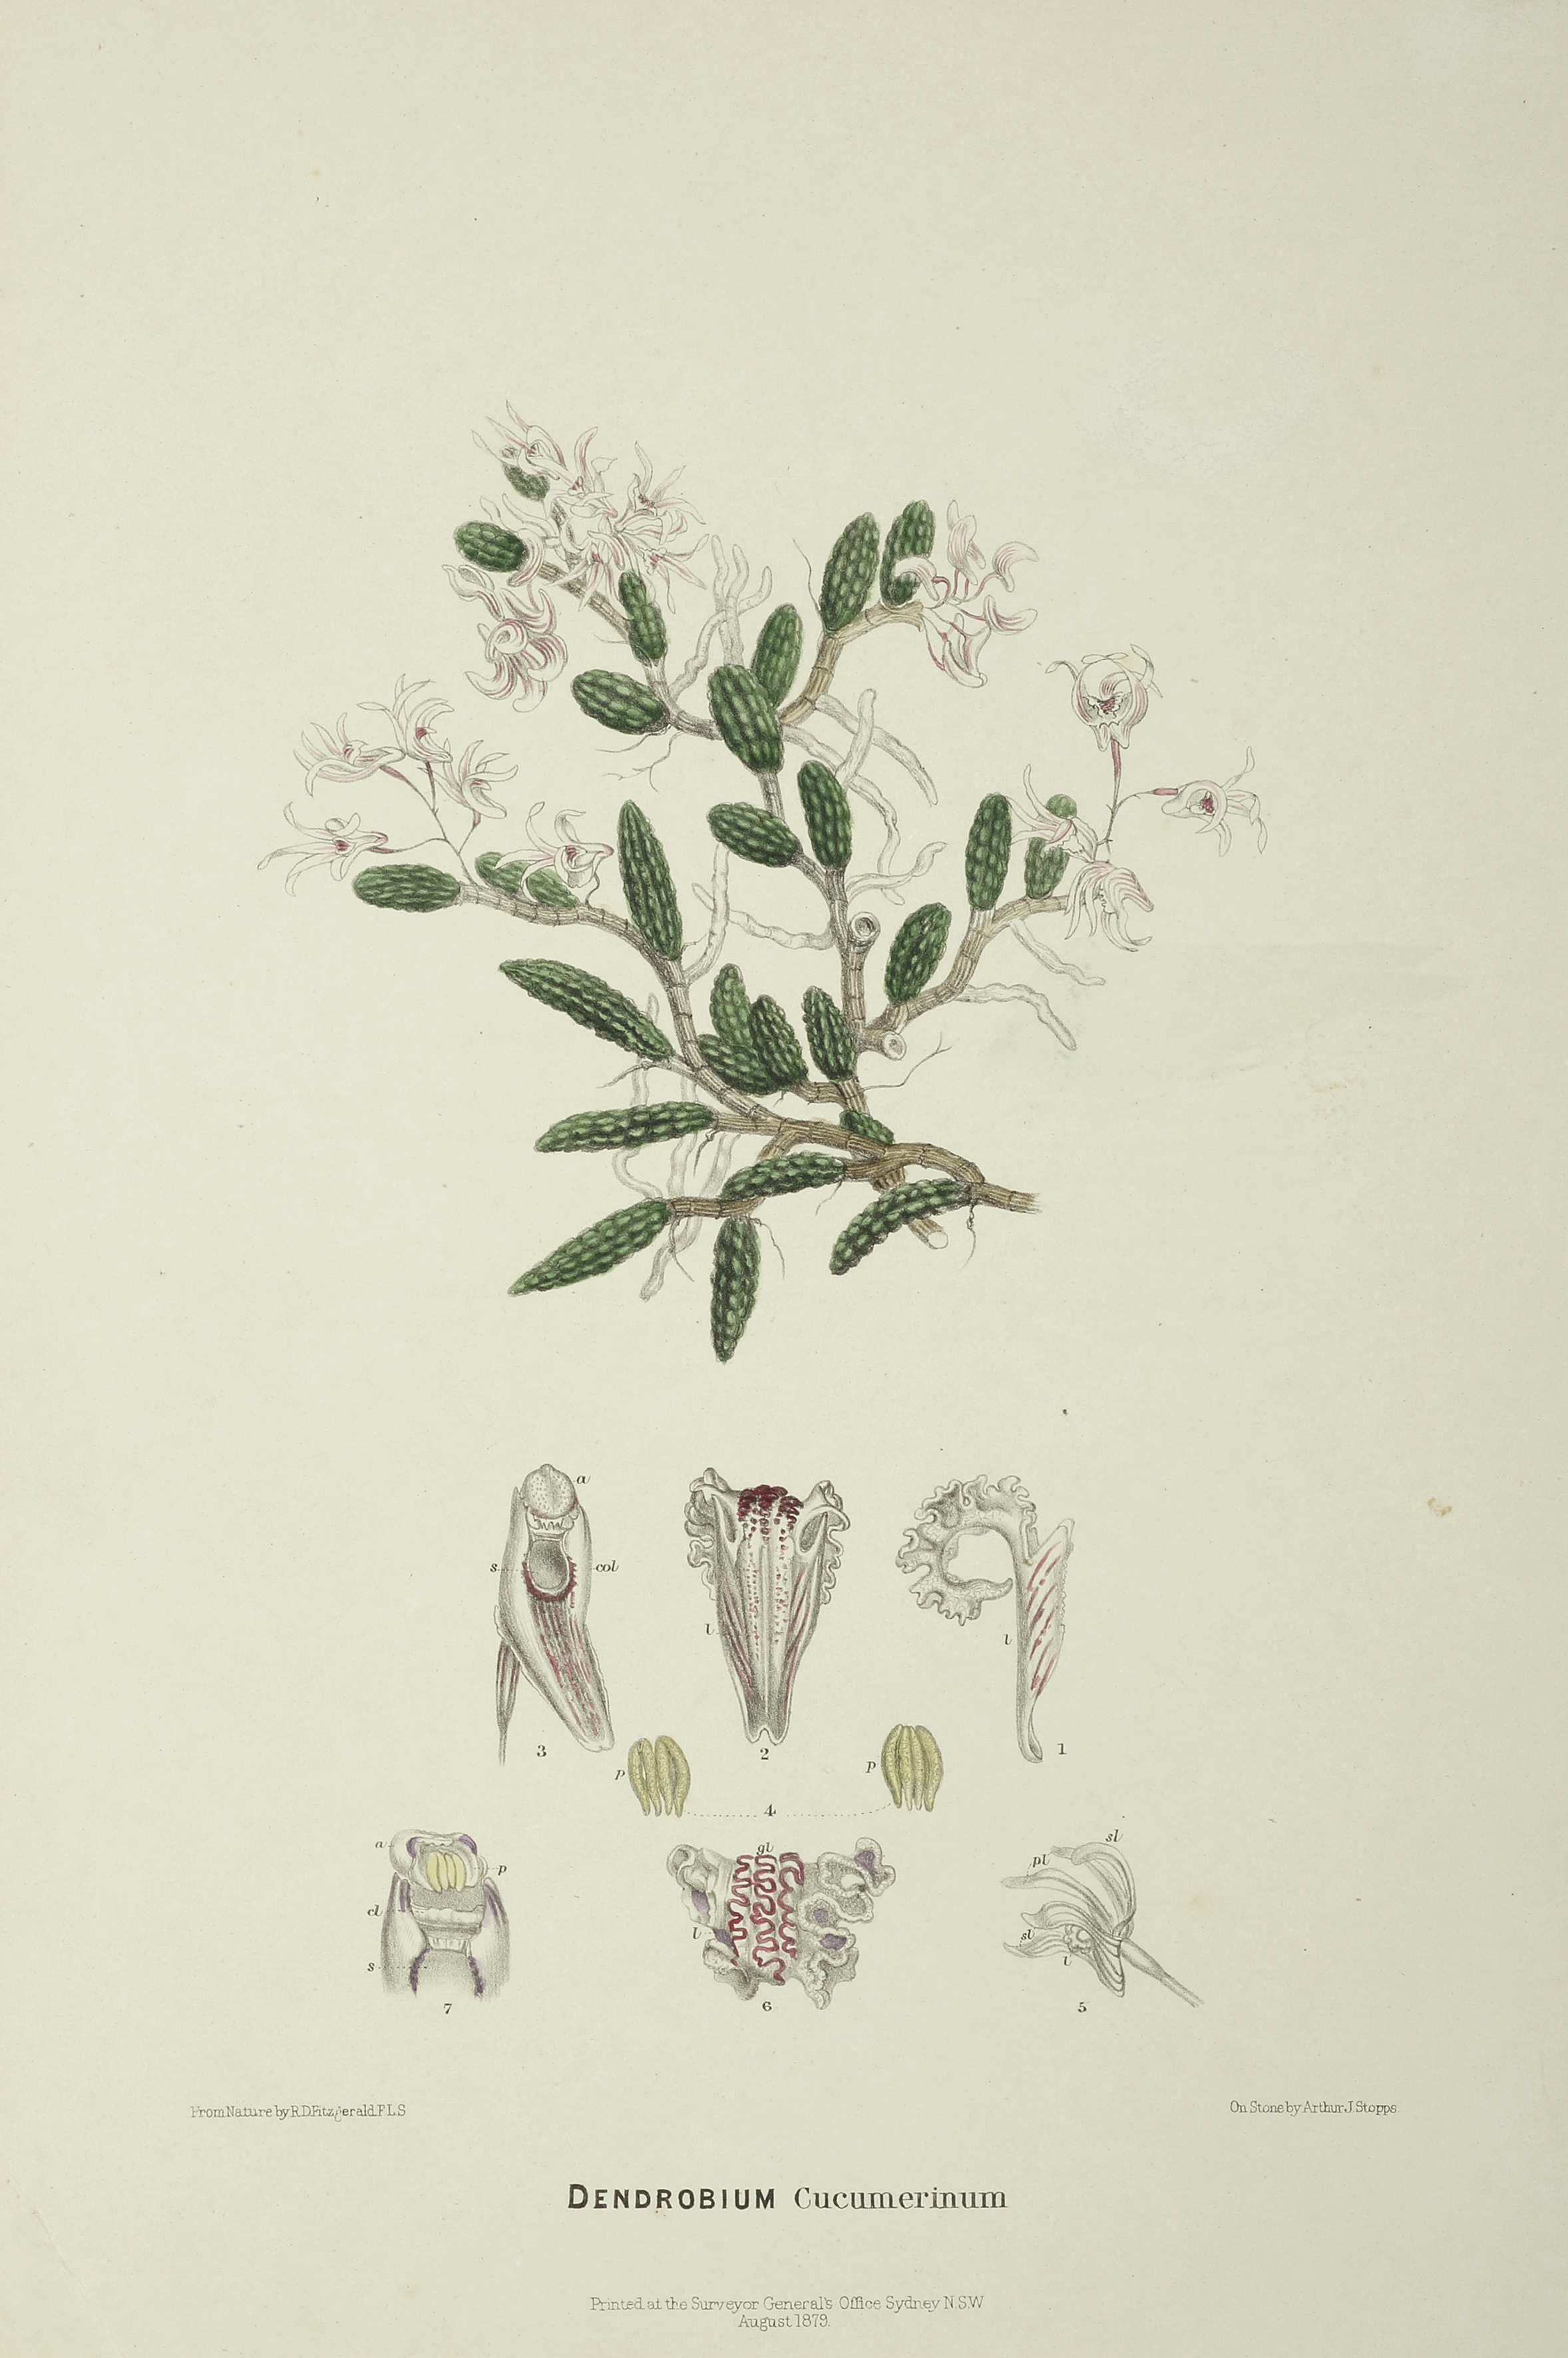 Dendrobium Cucumerinum [Cucumber orchid] - Antique Print from 1879